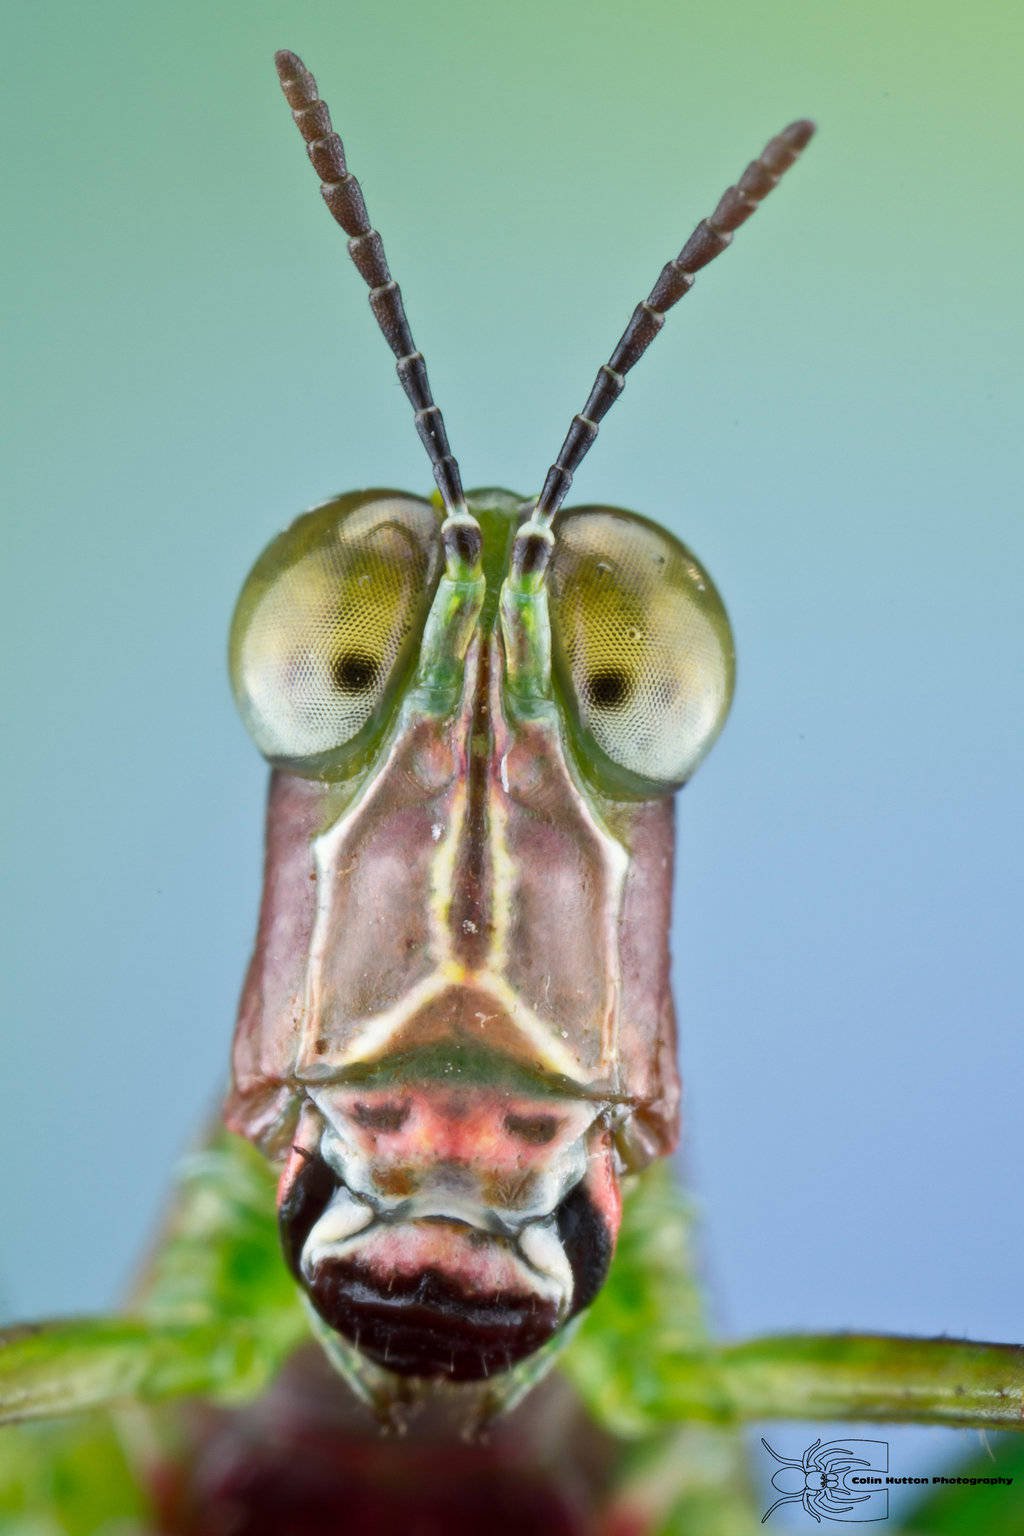 Những khuôn mặt côn trùng làm kinh ngạc của Colin Hutton